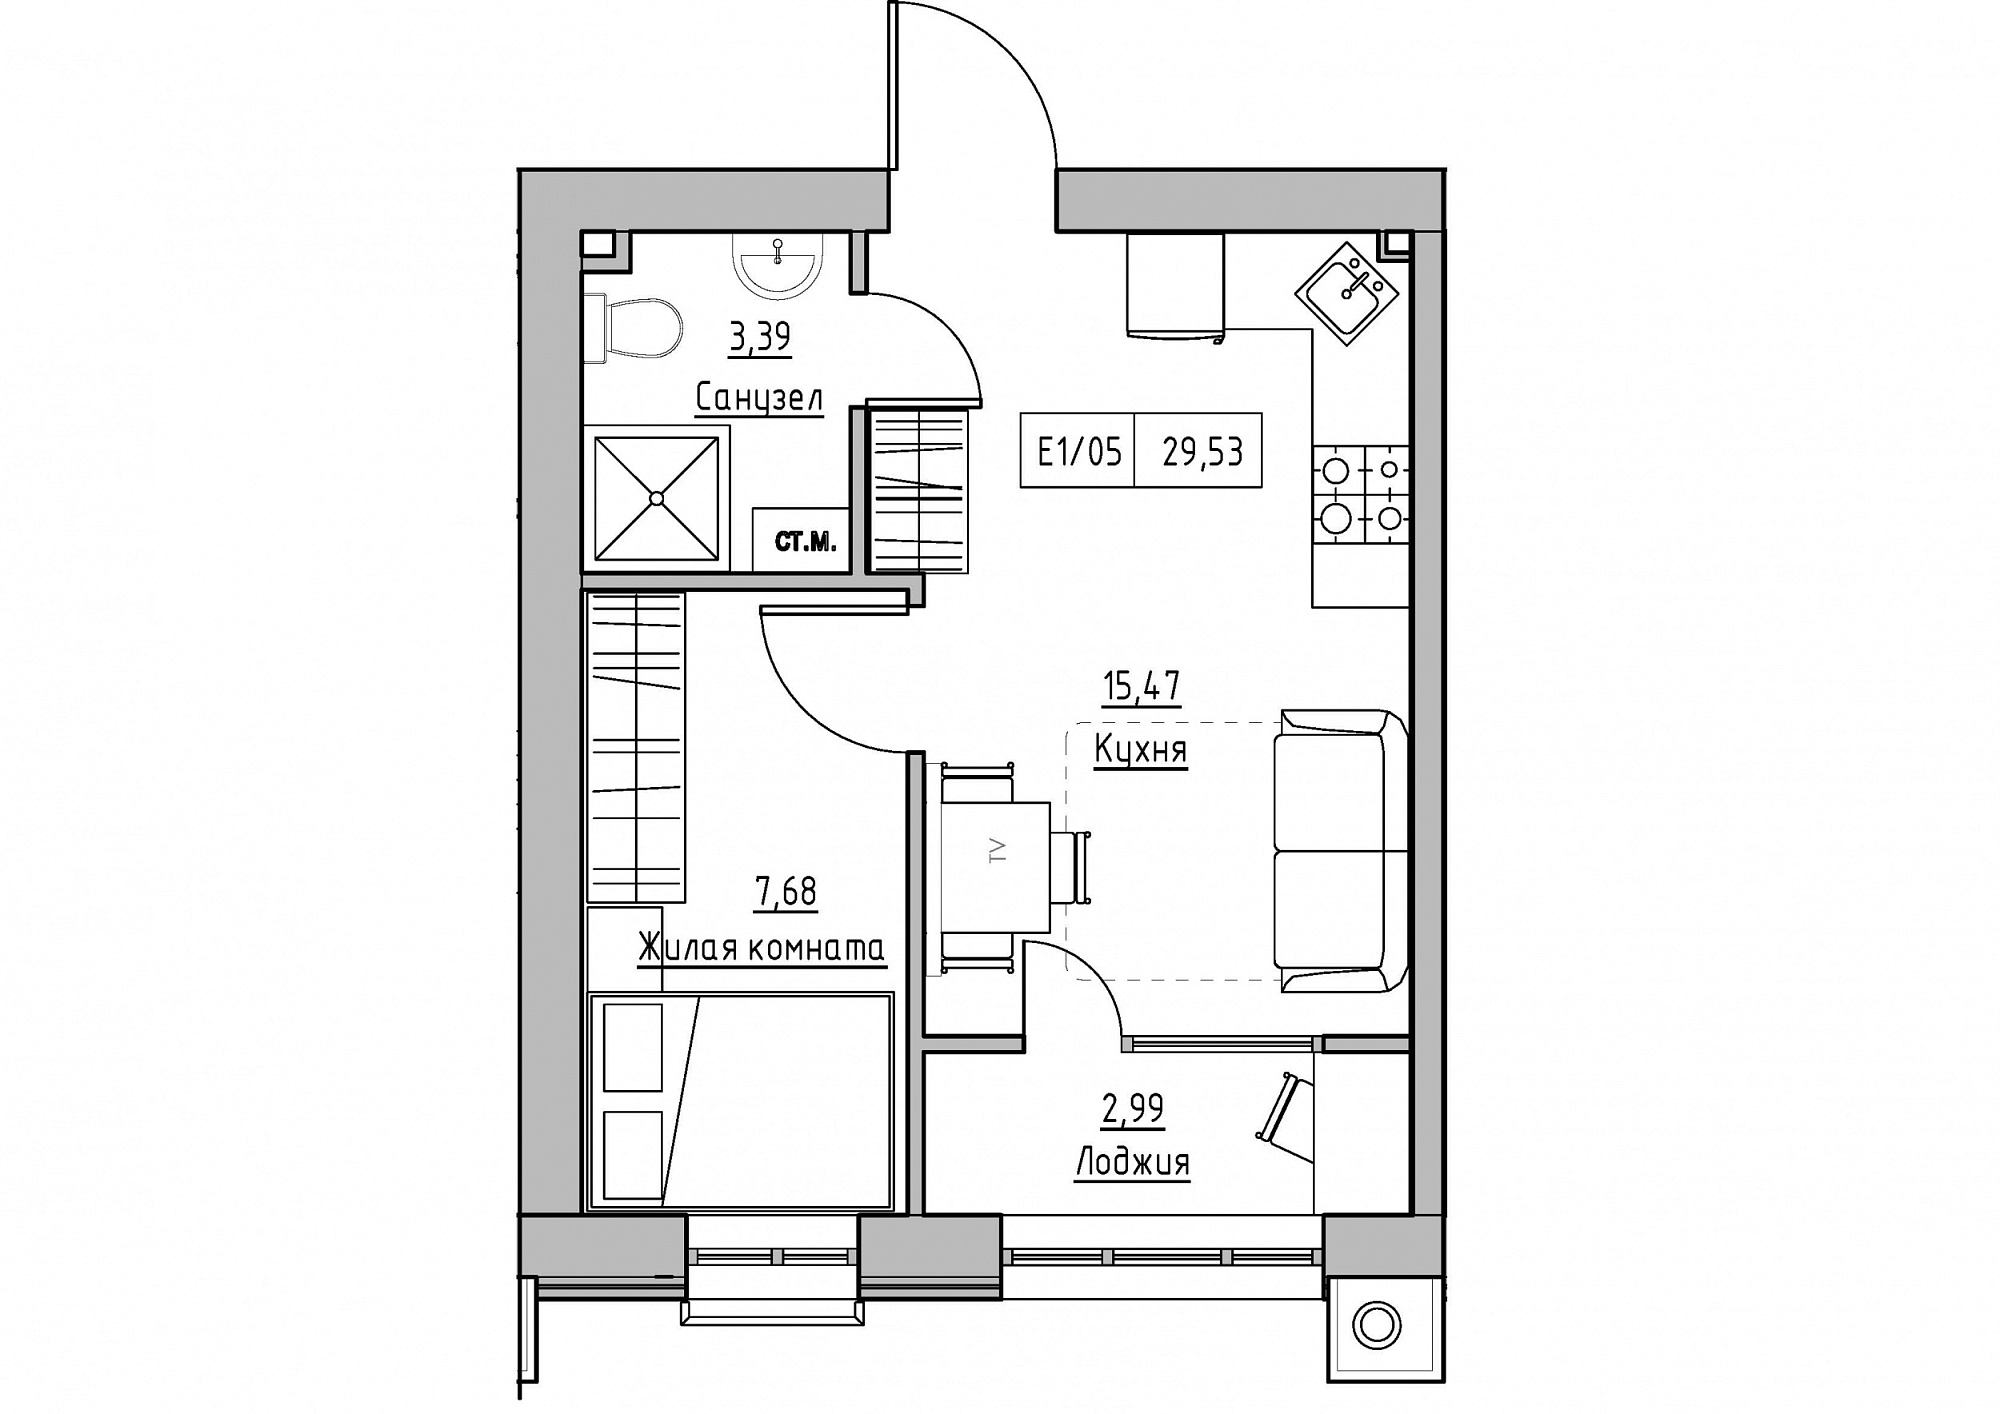 Планировка 1-к квартира площей 29.53м2, KS-011-03/0010.